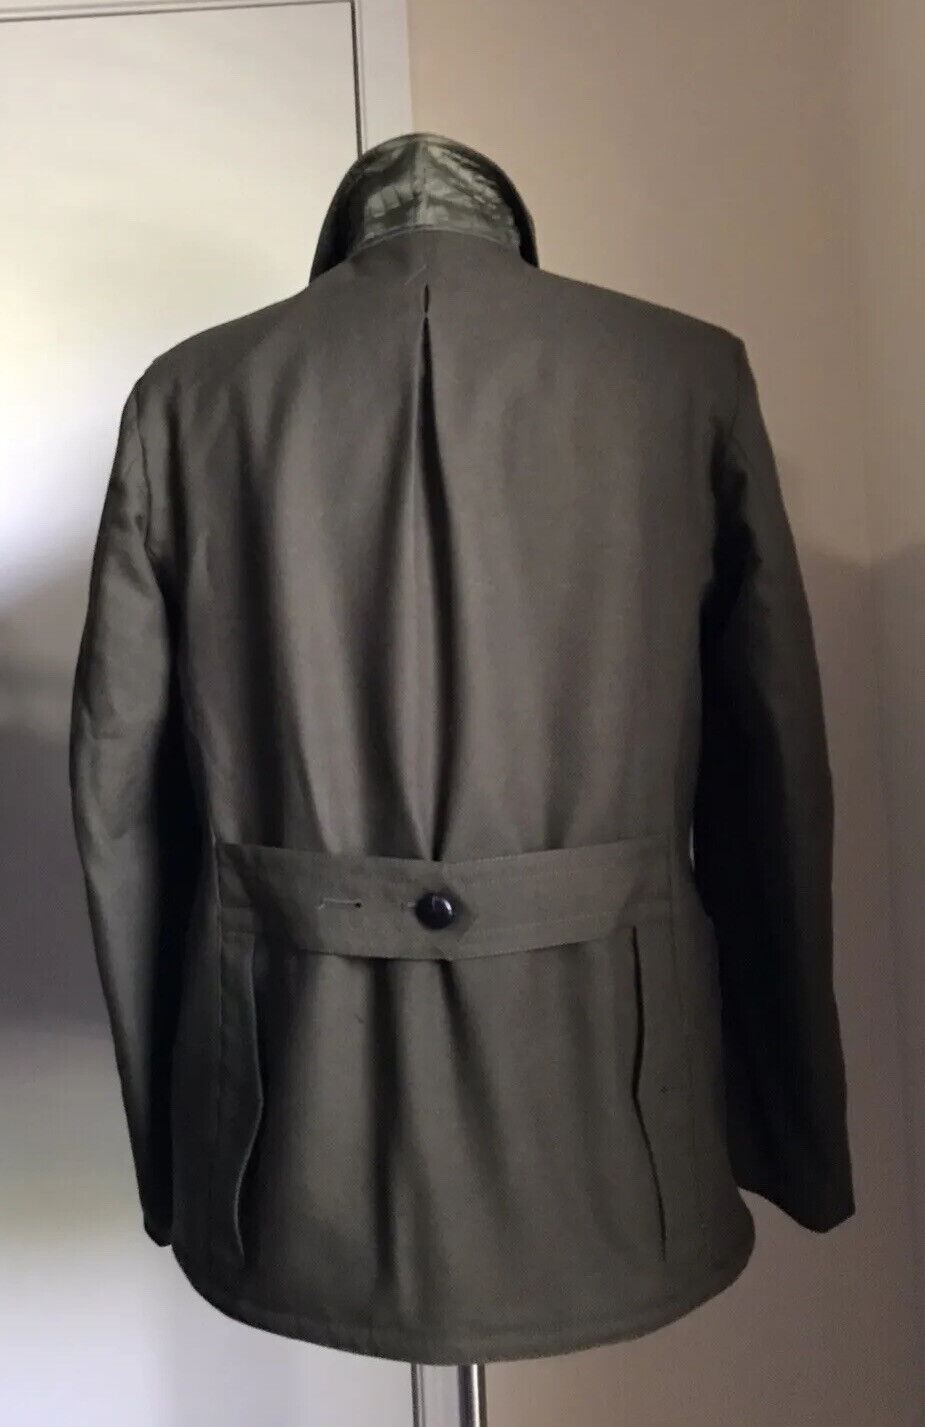 Новая куртка на подкладке из искусственного меха Maison Margiela Kaban, $2790, оливково-зеленый цвет 38/48 Ita